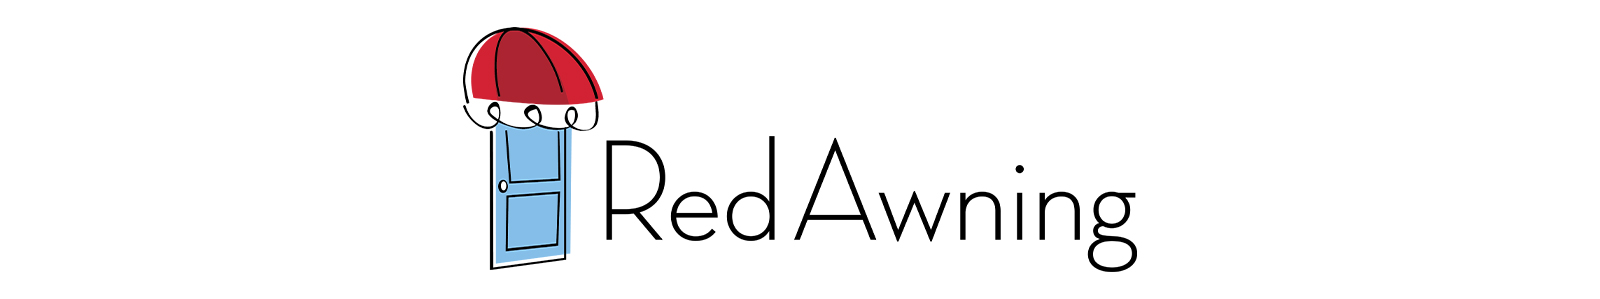 Red Awning Logo